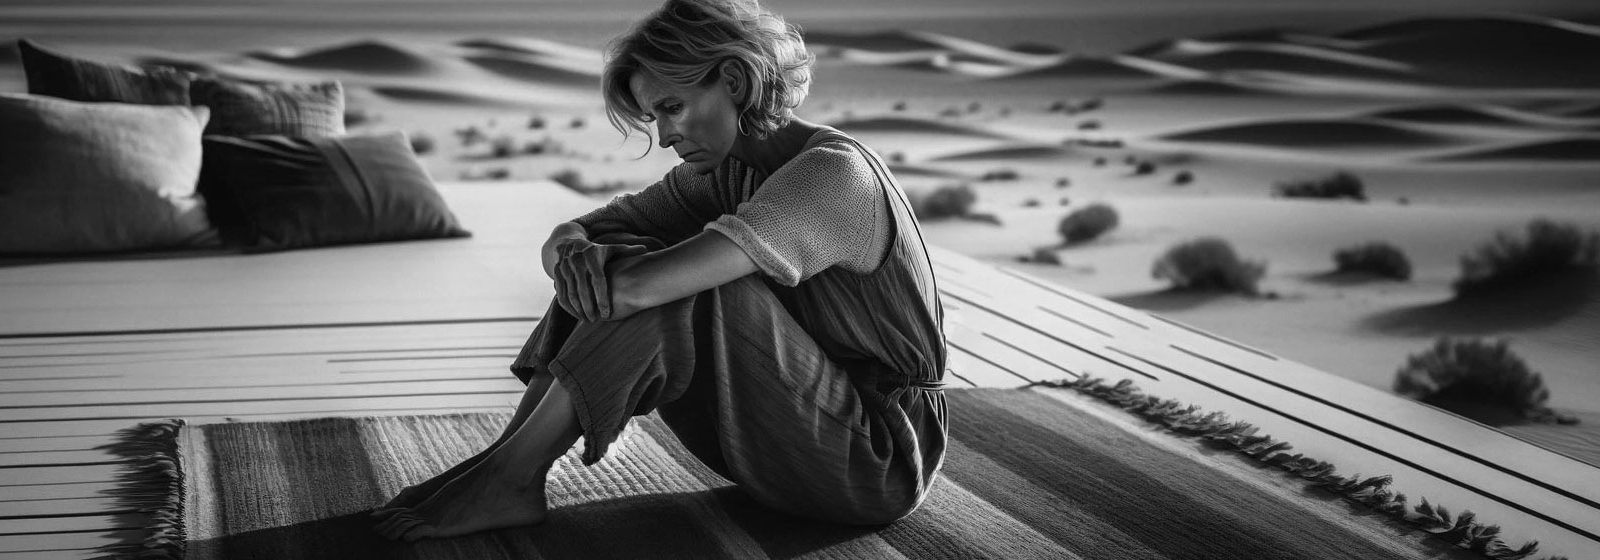 Frau in nachdenklicher Pose sitzt allein auf einer Holzterrasse vor einer Wüstenlandschaft, schwarz-weiß Aufnahme.